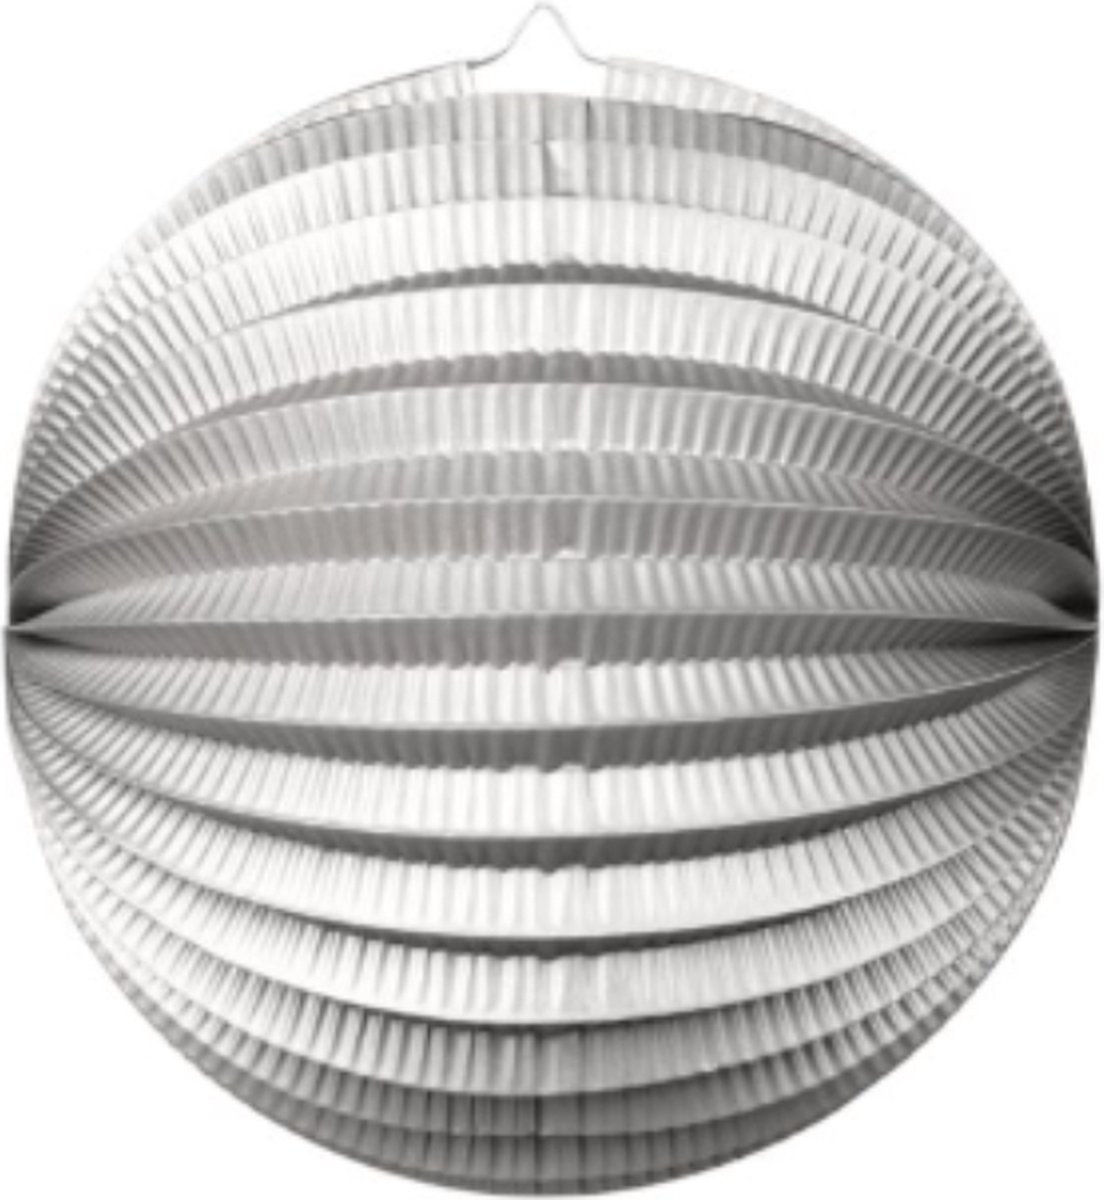 Wefiesta - Bollampion Metallic Zilver (25 cm) - Lampion sint maarten - lampionnen - Sint maarten optocht - lampionnen papier - We Fiesta